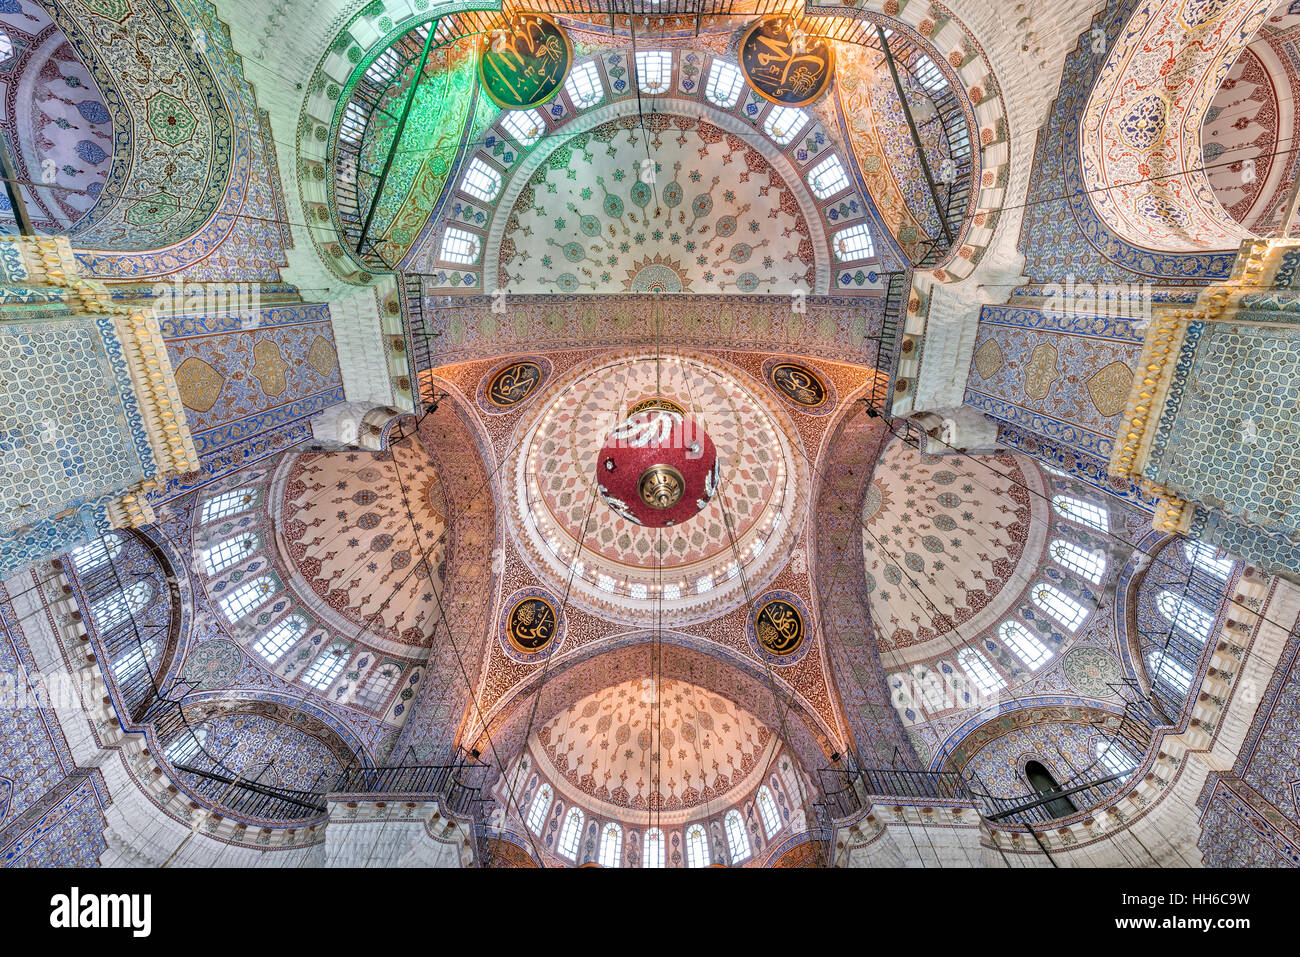 Die neue Valide Sultan-Moschee ist eine osmanische imperiale Moschee befindet sich im Stadtteil Eminönü in Istanbul, Türkei. Es befindet sich am Goldenen Horn, am südlichen Ende der Galata-Brücke, und gehört zu den architektonischen Sehenswürdigkeiten von Istanbul. Stockfoto